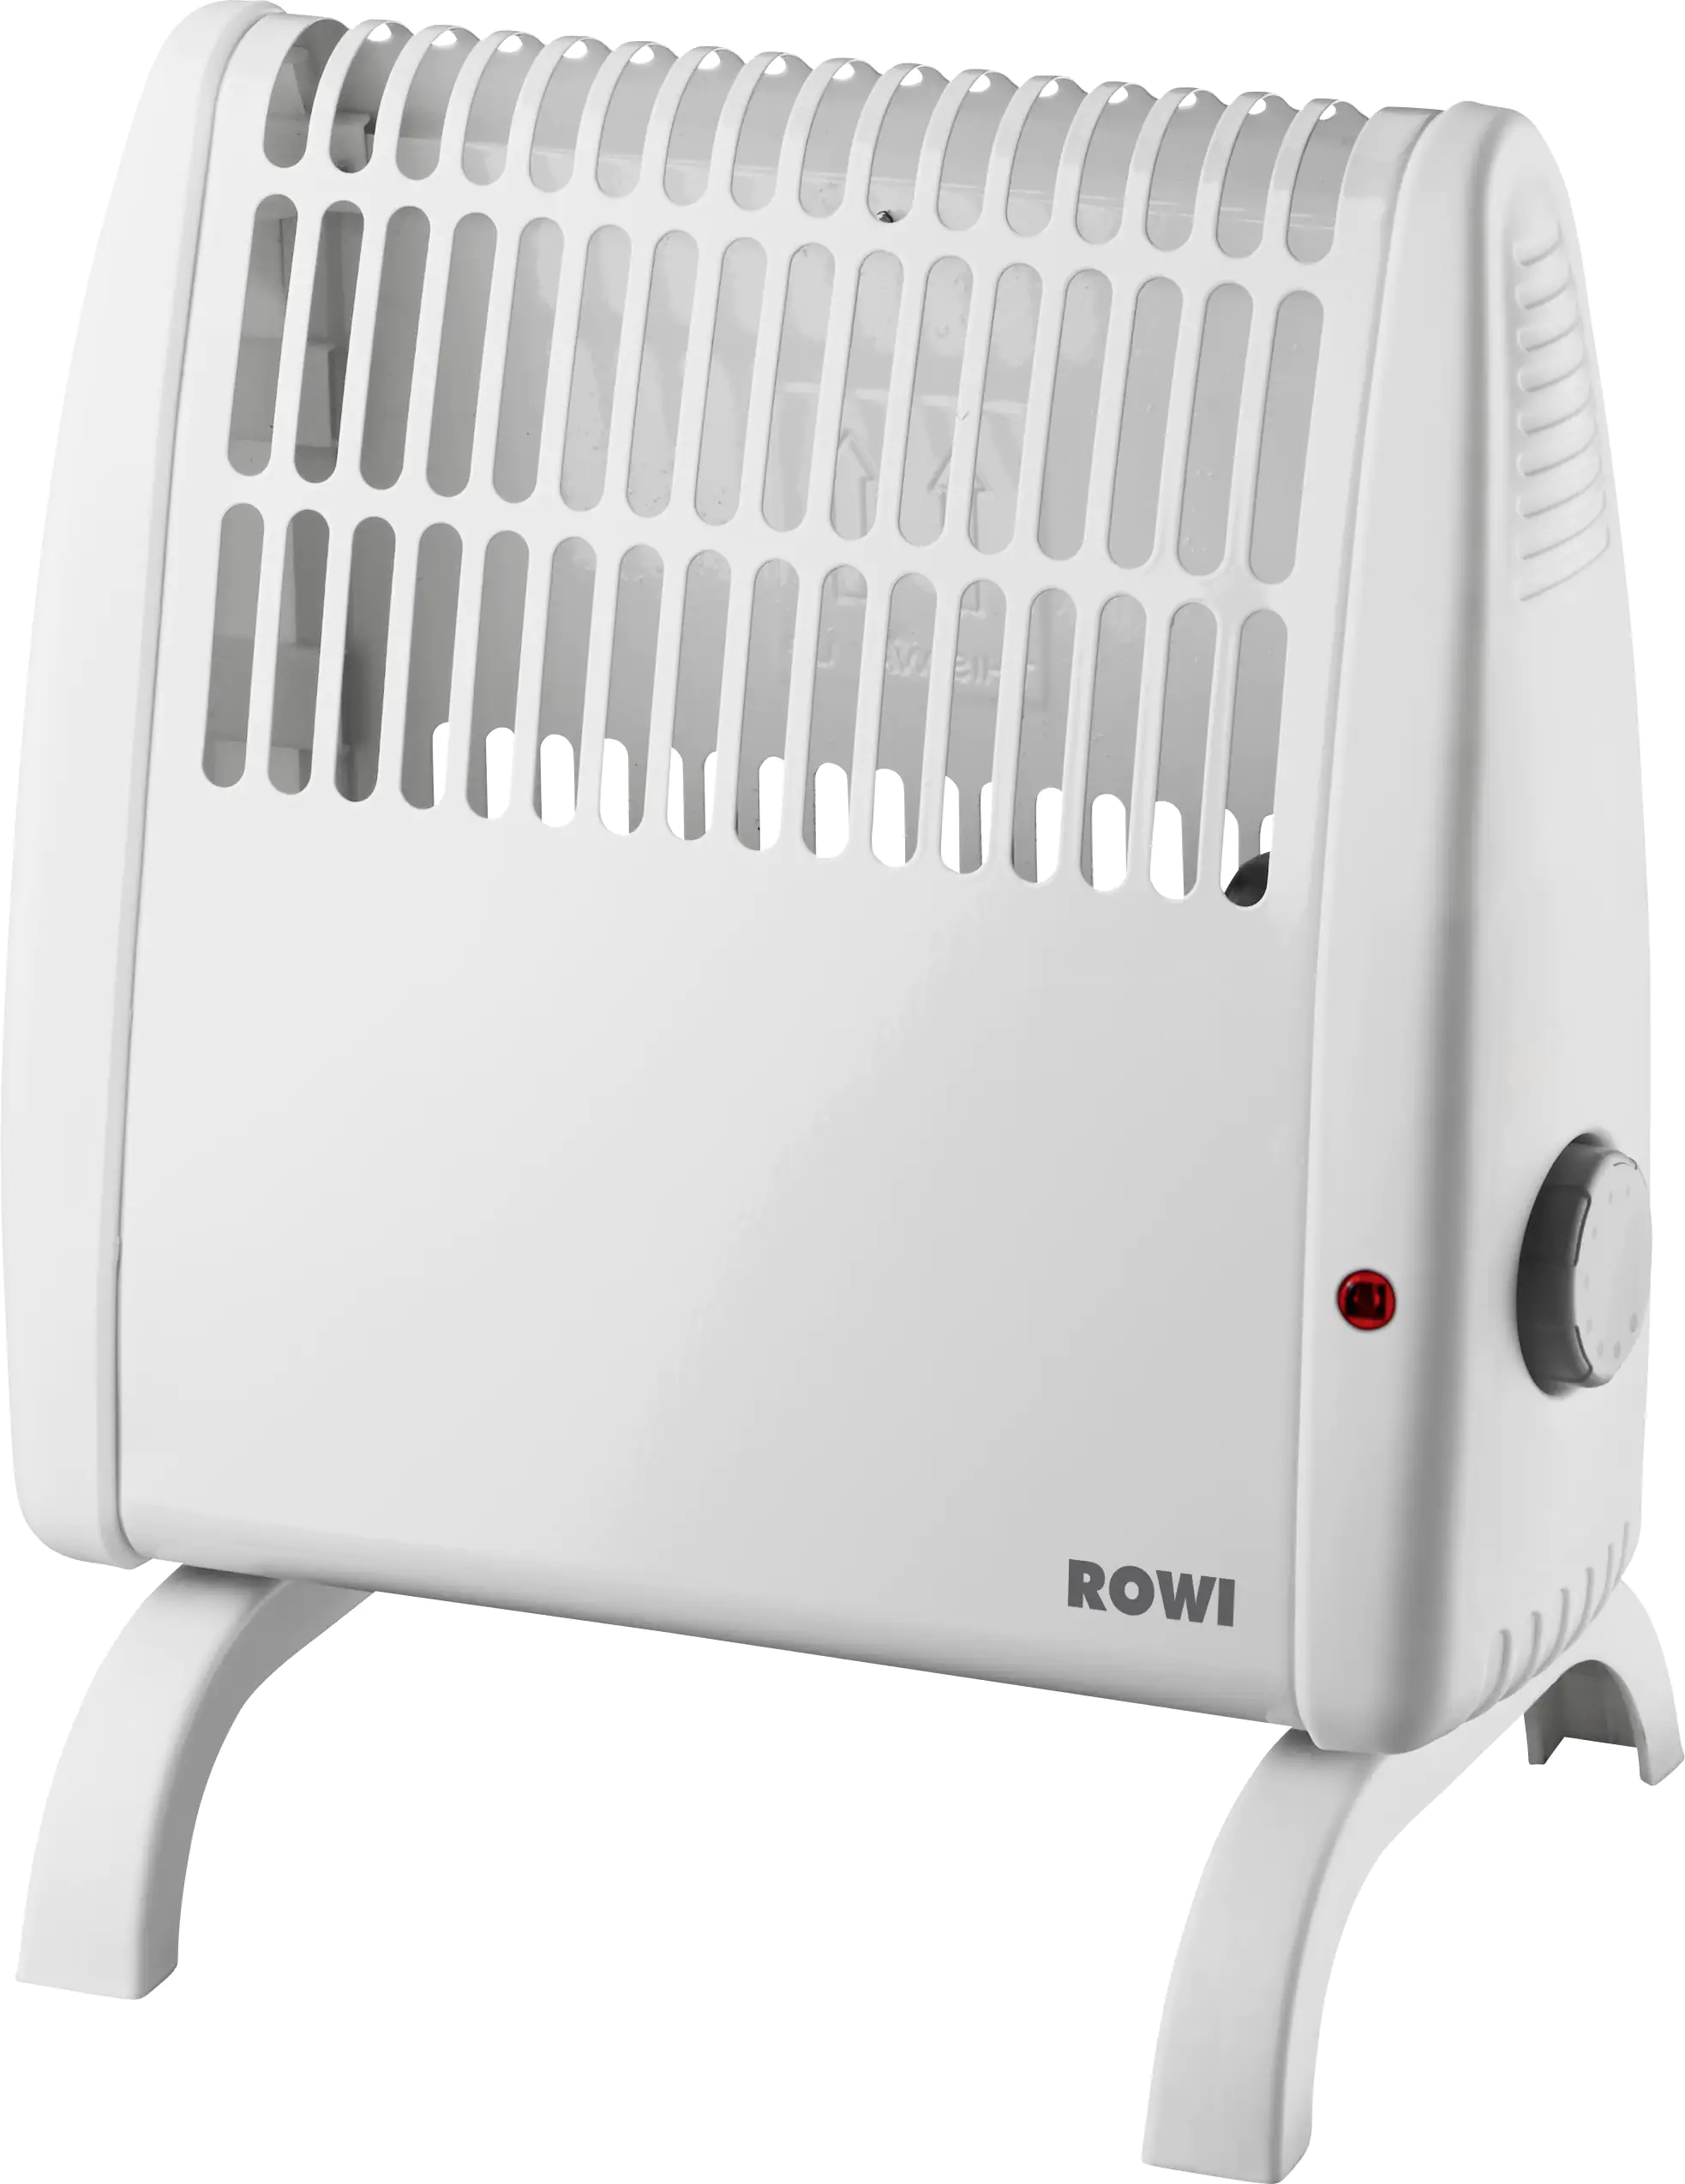 Rowi Frostwächter HFW 400/1 S Standgerät, 400 Watt kaufen